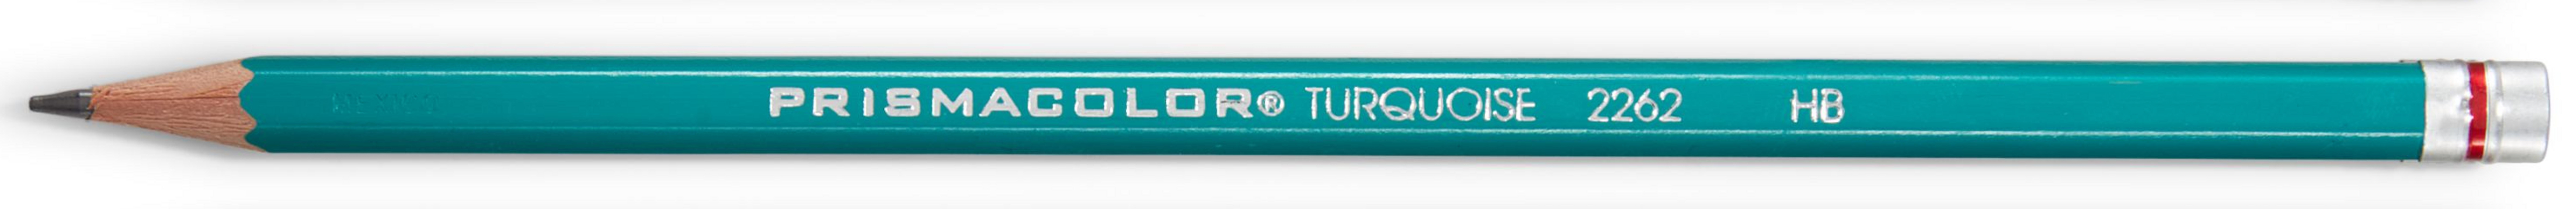 Prismacolor Turquoise Pencil, HB